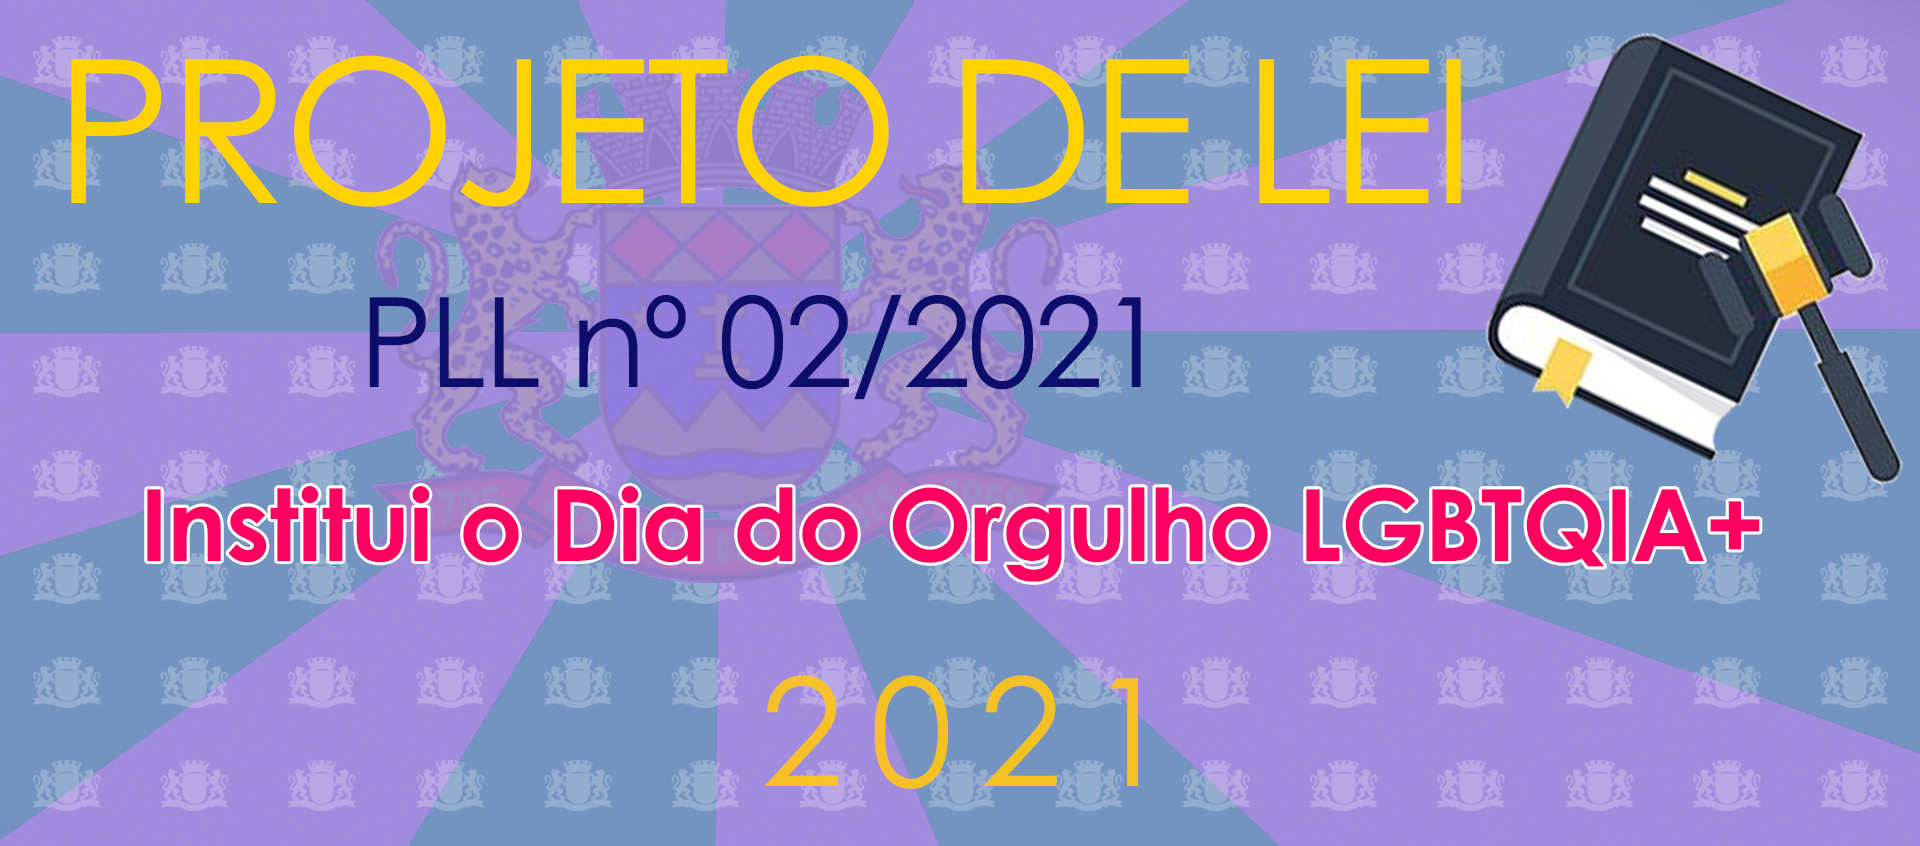 Projeto de Lei do Legislativo nº 02/2021 - Dia do Orgulho LGBTQIA+